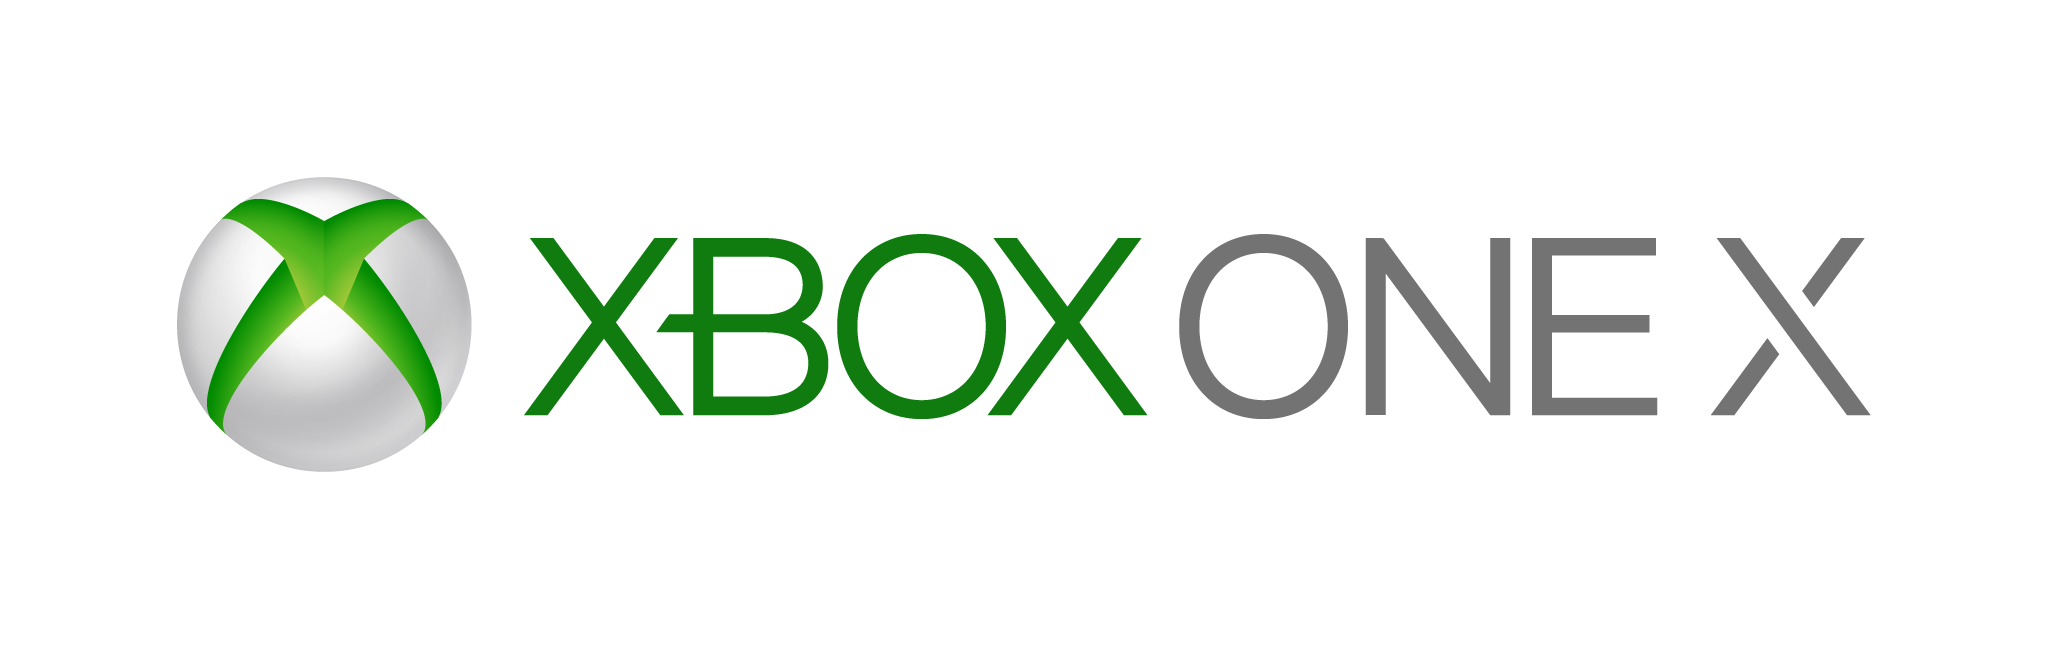 Xbox One X, Xbox Wiki